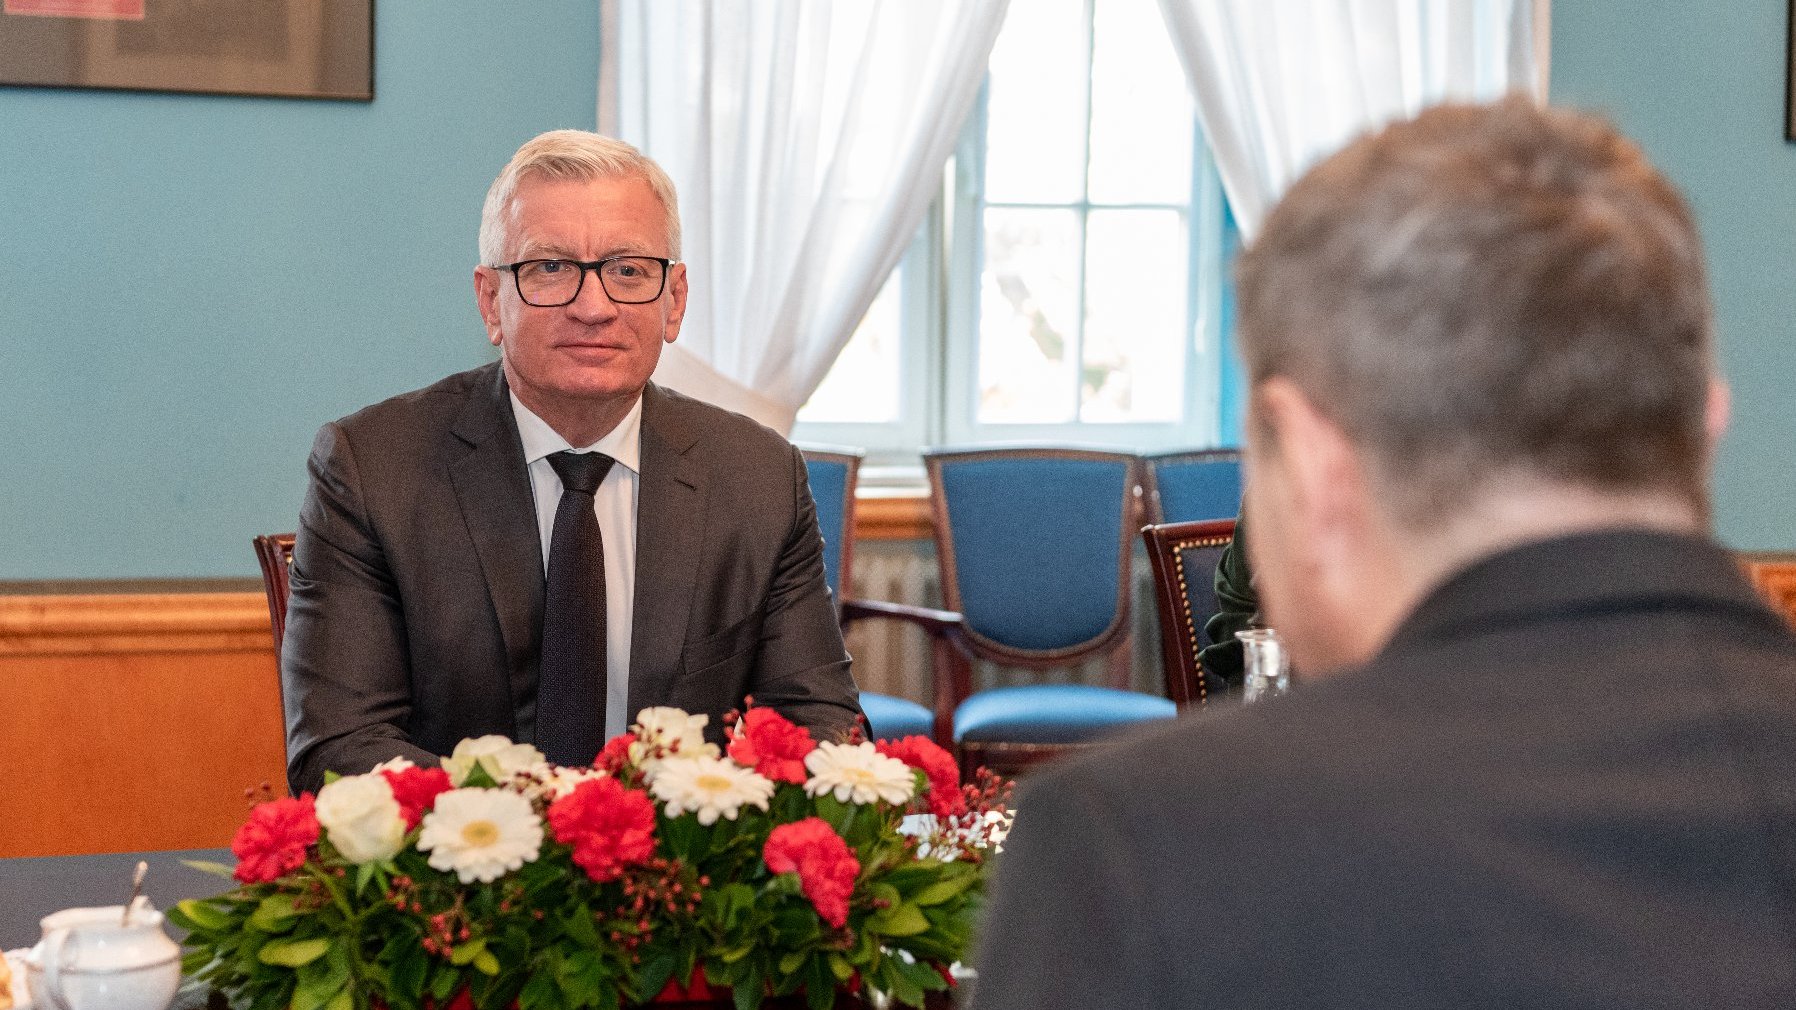 Galeria zdjęć przedstawia wizytę ambasadora Danii w Urzędzie Miasta Poznania.